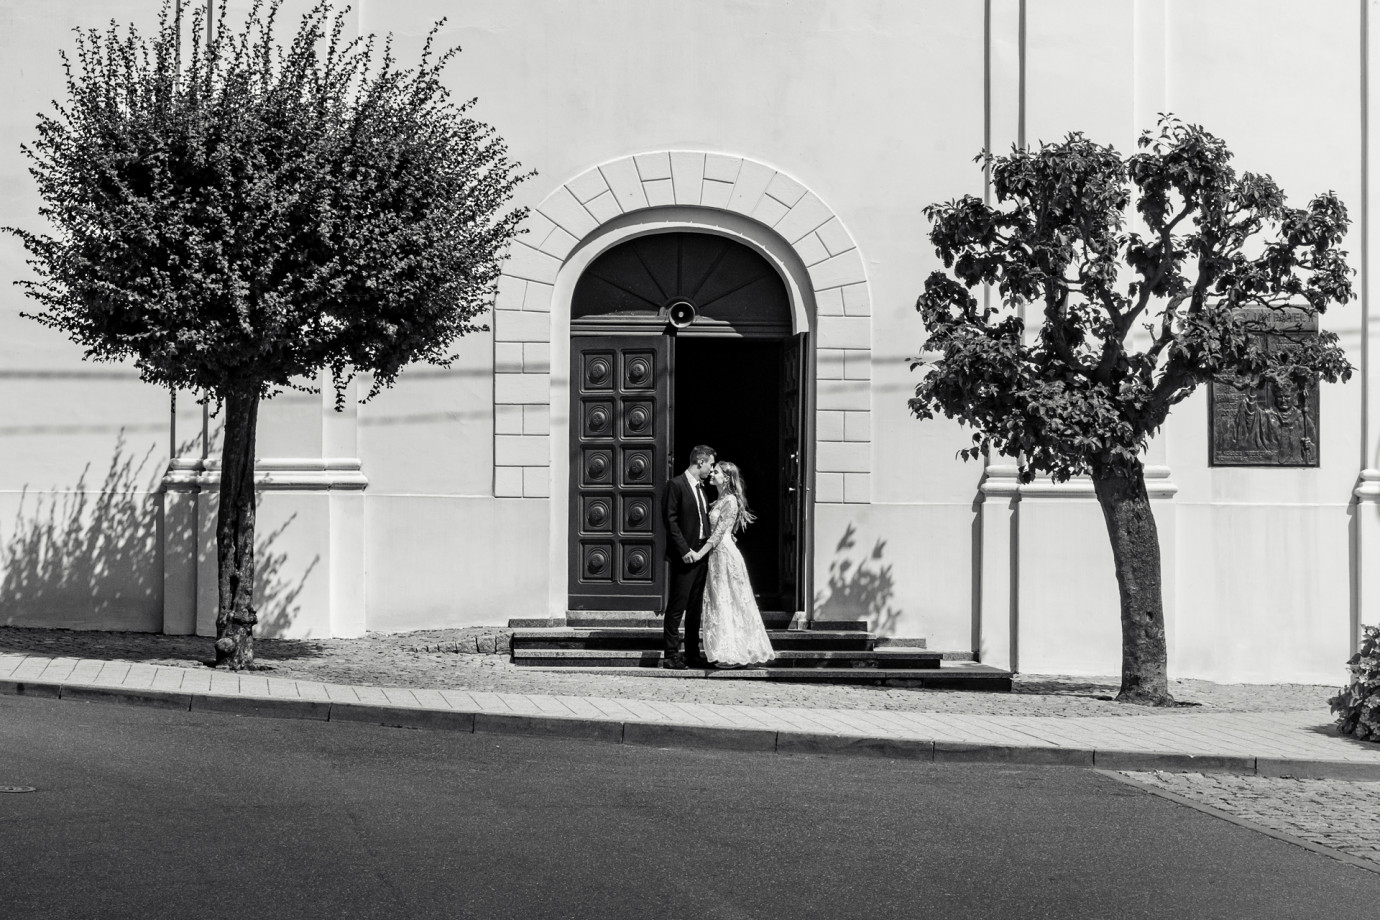 fotograf bydgoszcz fotopstryk-pawel-liczbik portfolio zdjecia slubne inspiracje wesele plener slubny sesja slubna